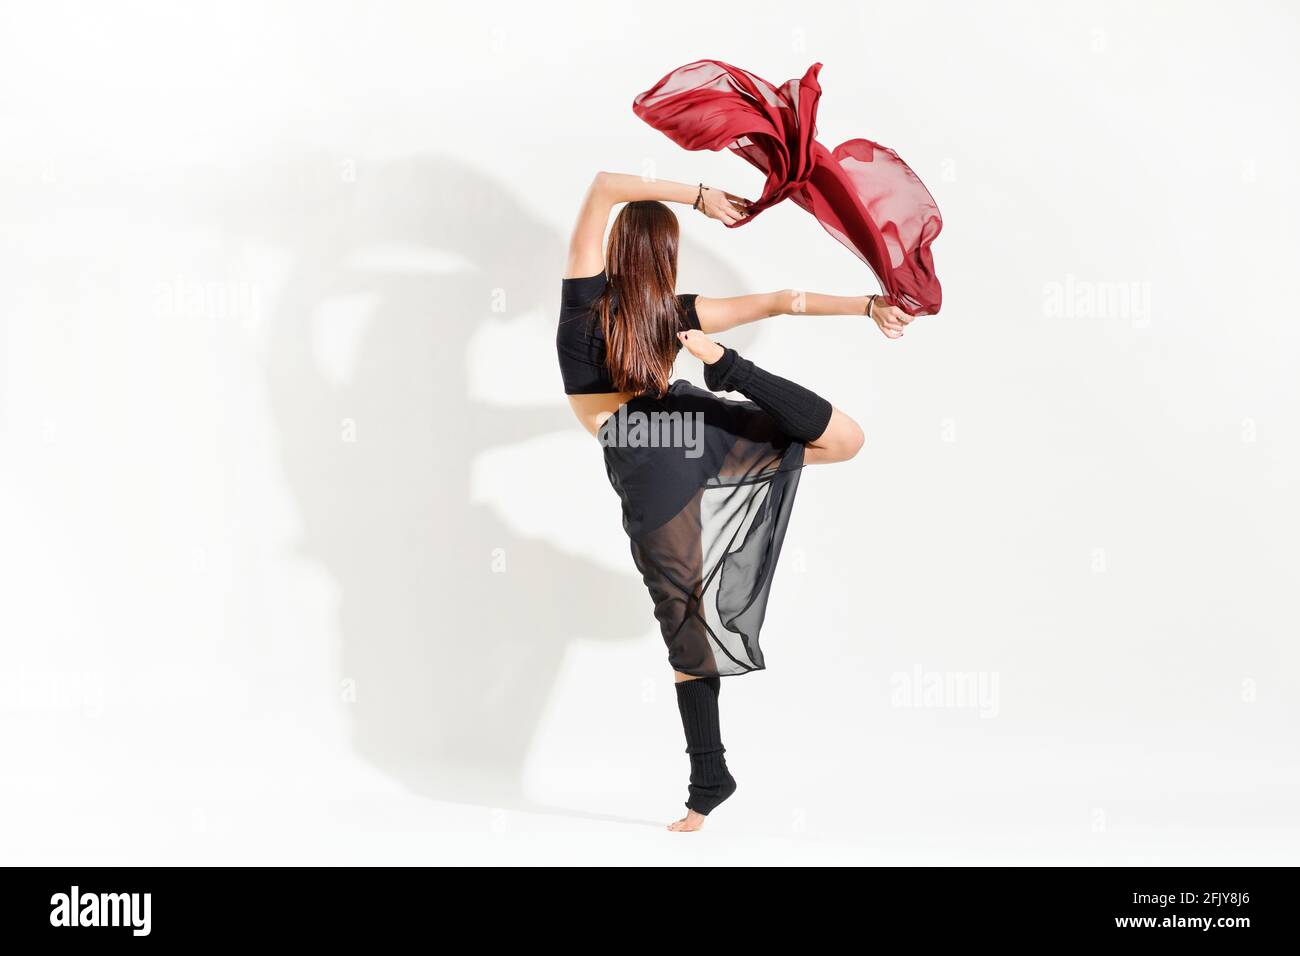 Ballerina donna che esegue una danza arabesca alternativa posa agitarsi con grazia tessuto rosso sopra la testa in una vista posteriore sopra bianco con ombra e co Foto Stock